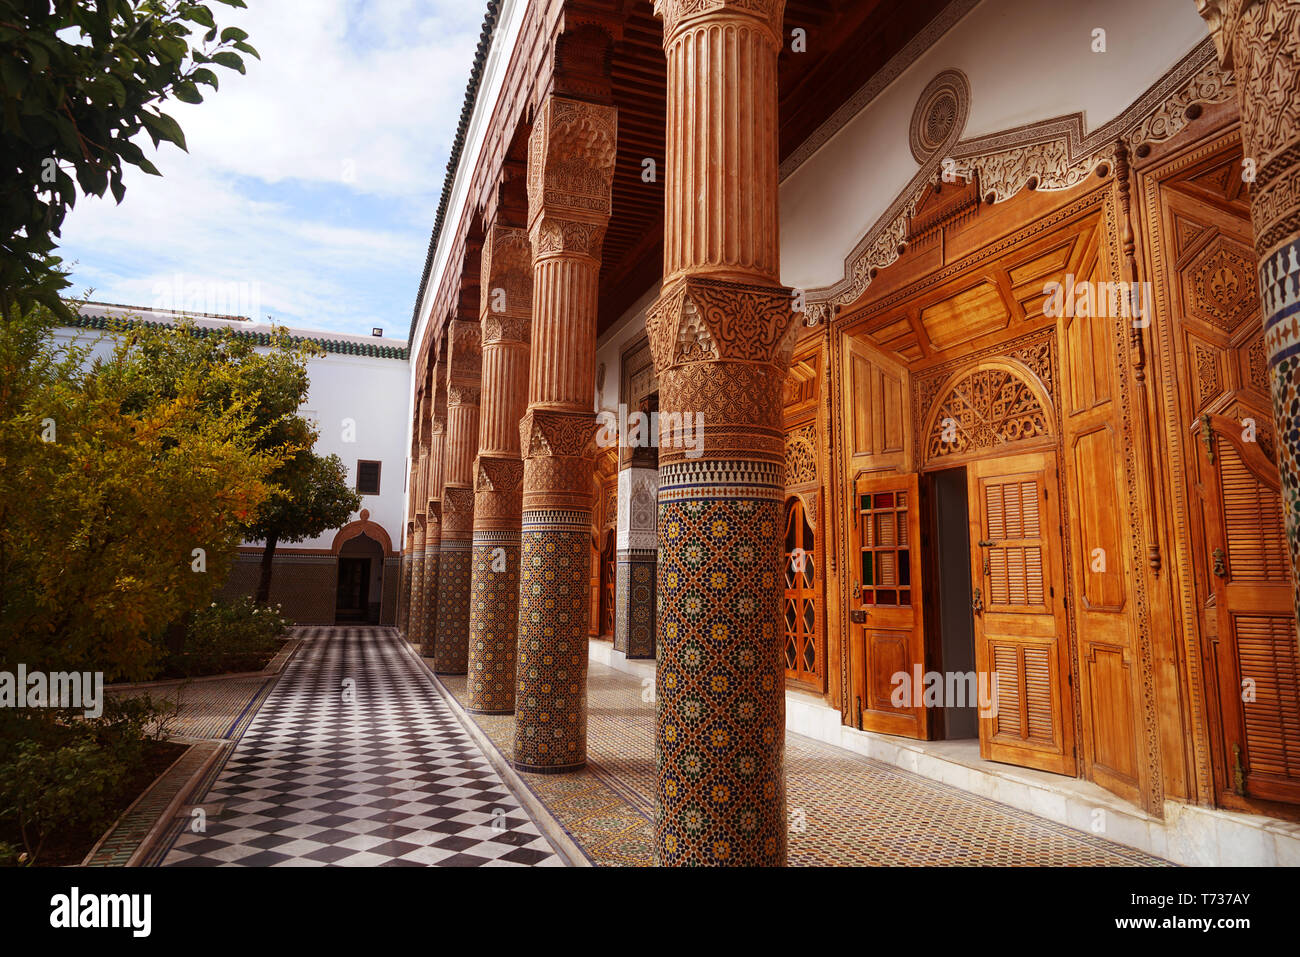 Mit Orangenbäumen und einem Brunnen, der verzierten Säulen und Wände gefüllt, liegen zum Innenhof des Museums der kulturellen Confluences, befindet sich in einem Stockfoto